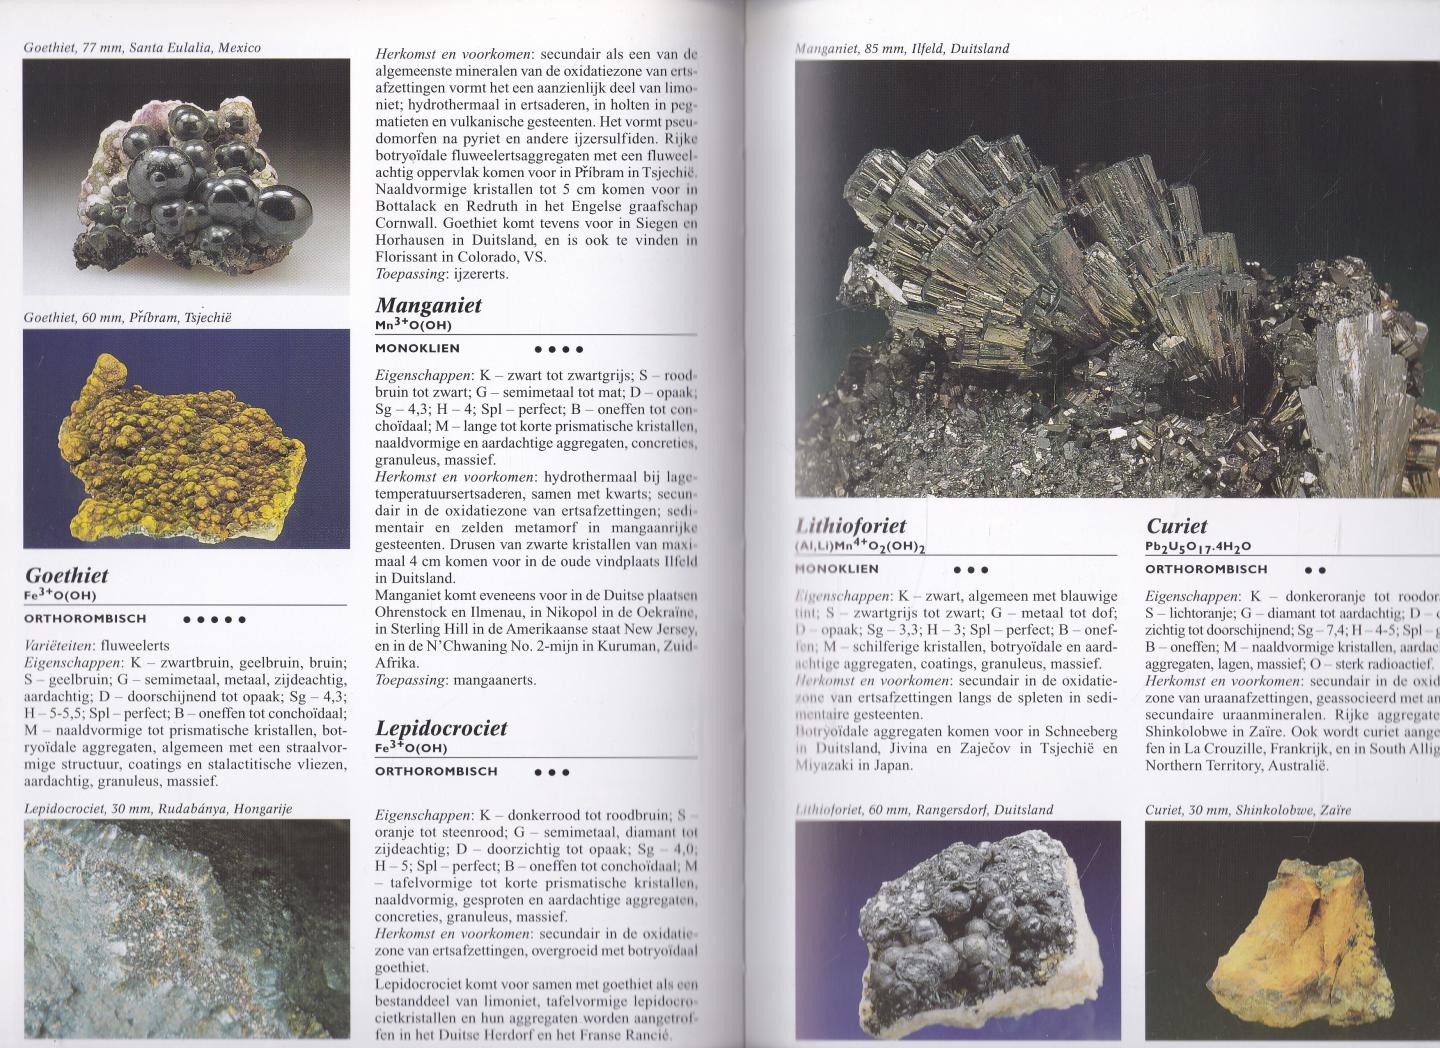 Korbel, Petr., Novak, Milan. - Geillustreerde Mineralen encyclopedie / Honderden mineralen, met een uitvoerige beschrijving van herkomst, toepassing en eigenschappen